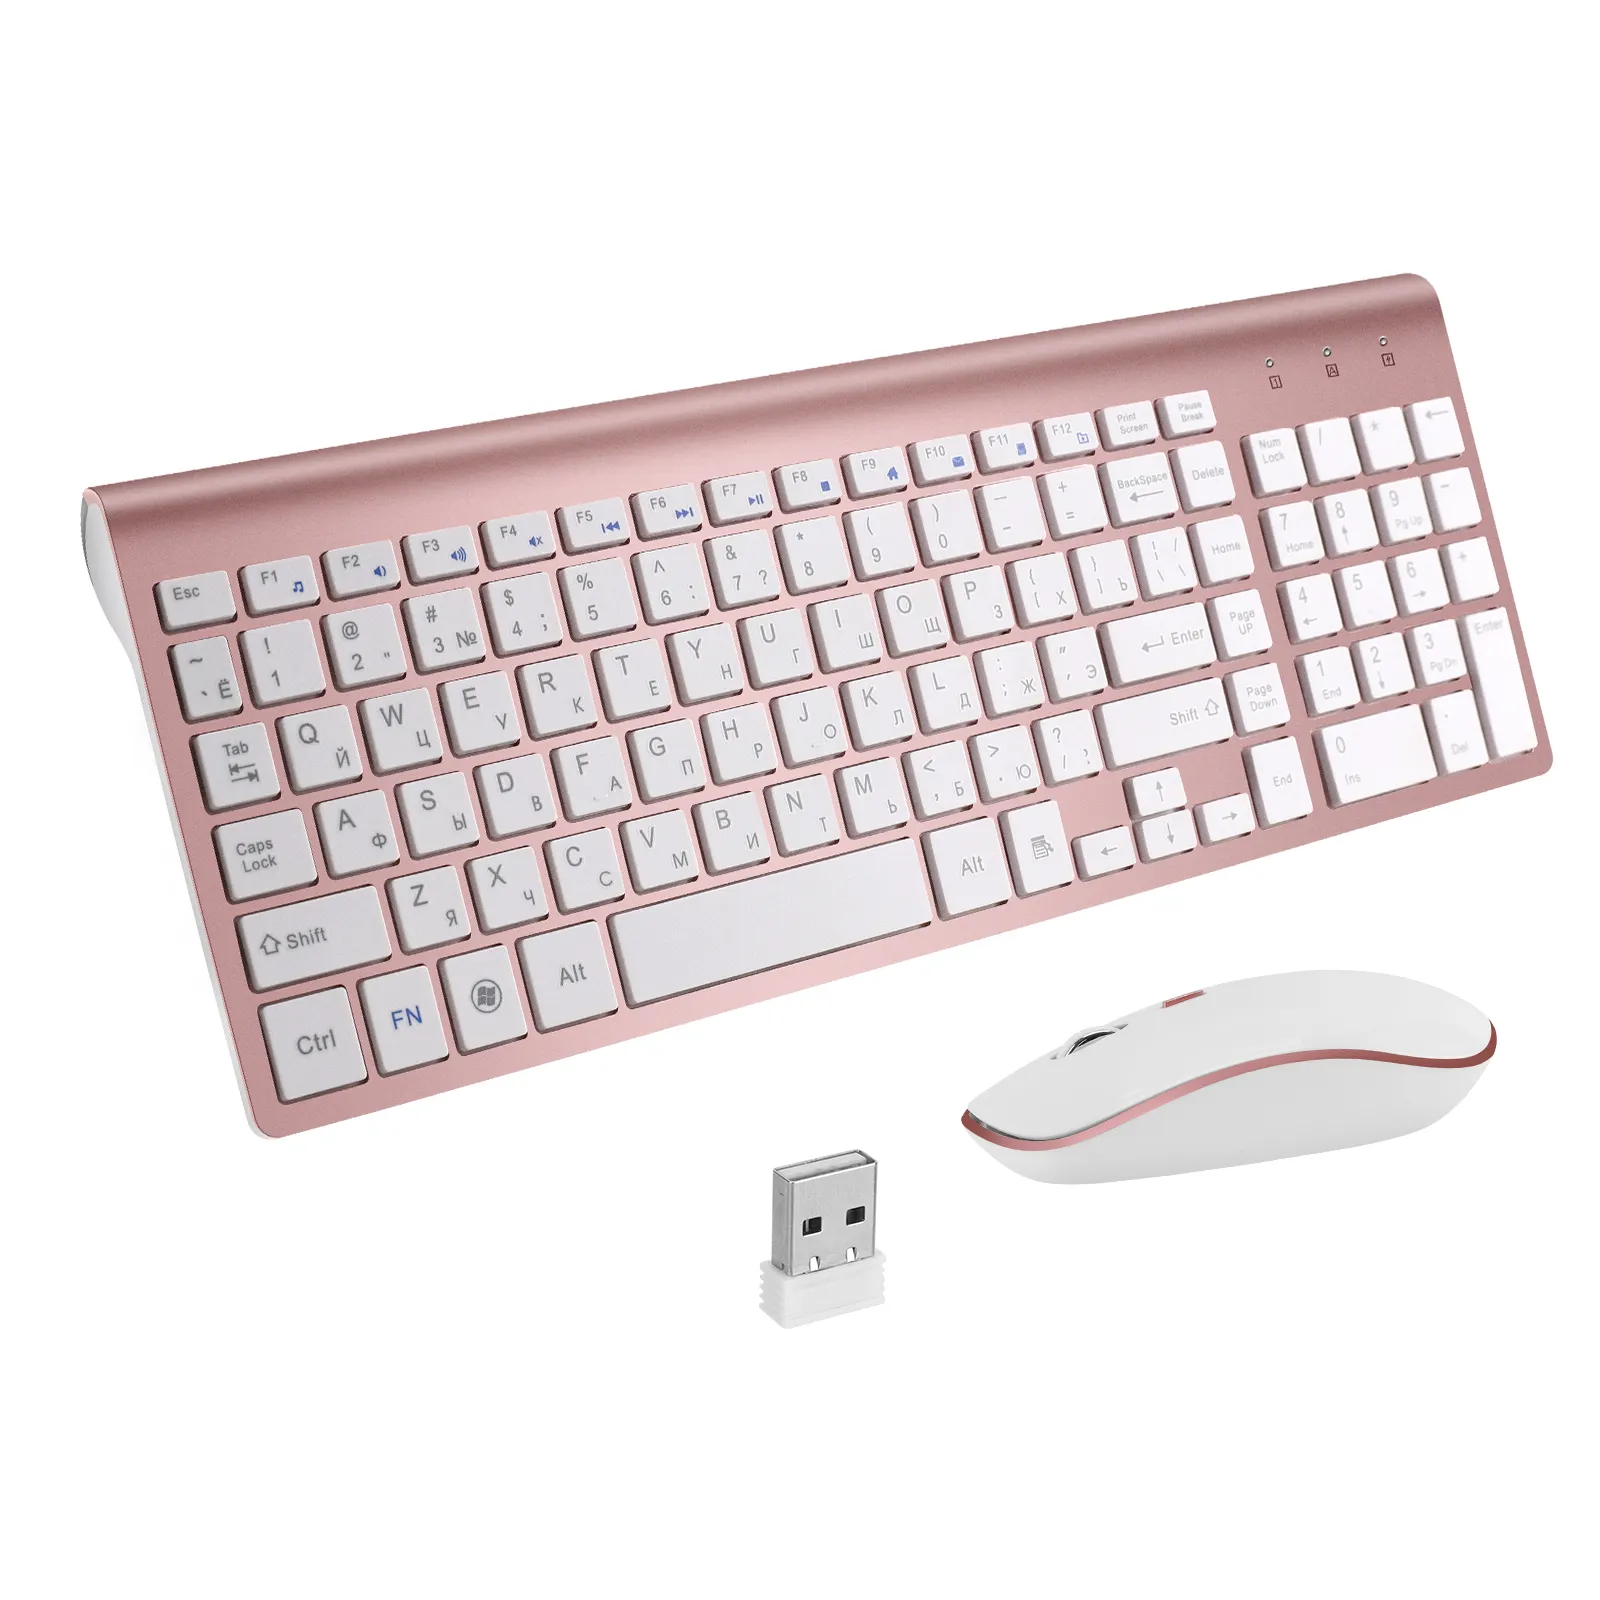 Best selling onAmazon computer ergonomic pink wireless keyboard and mouse